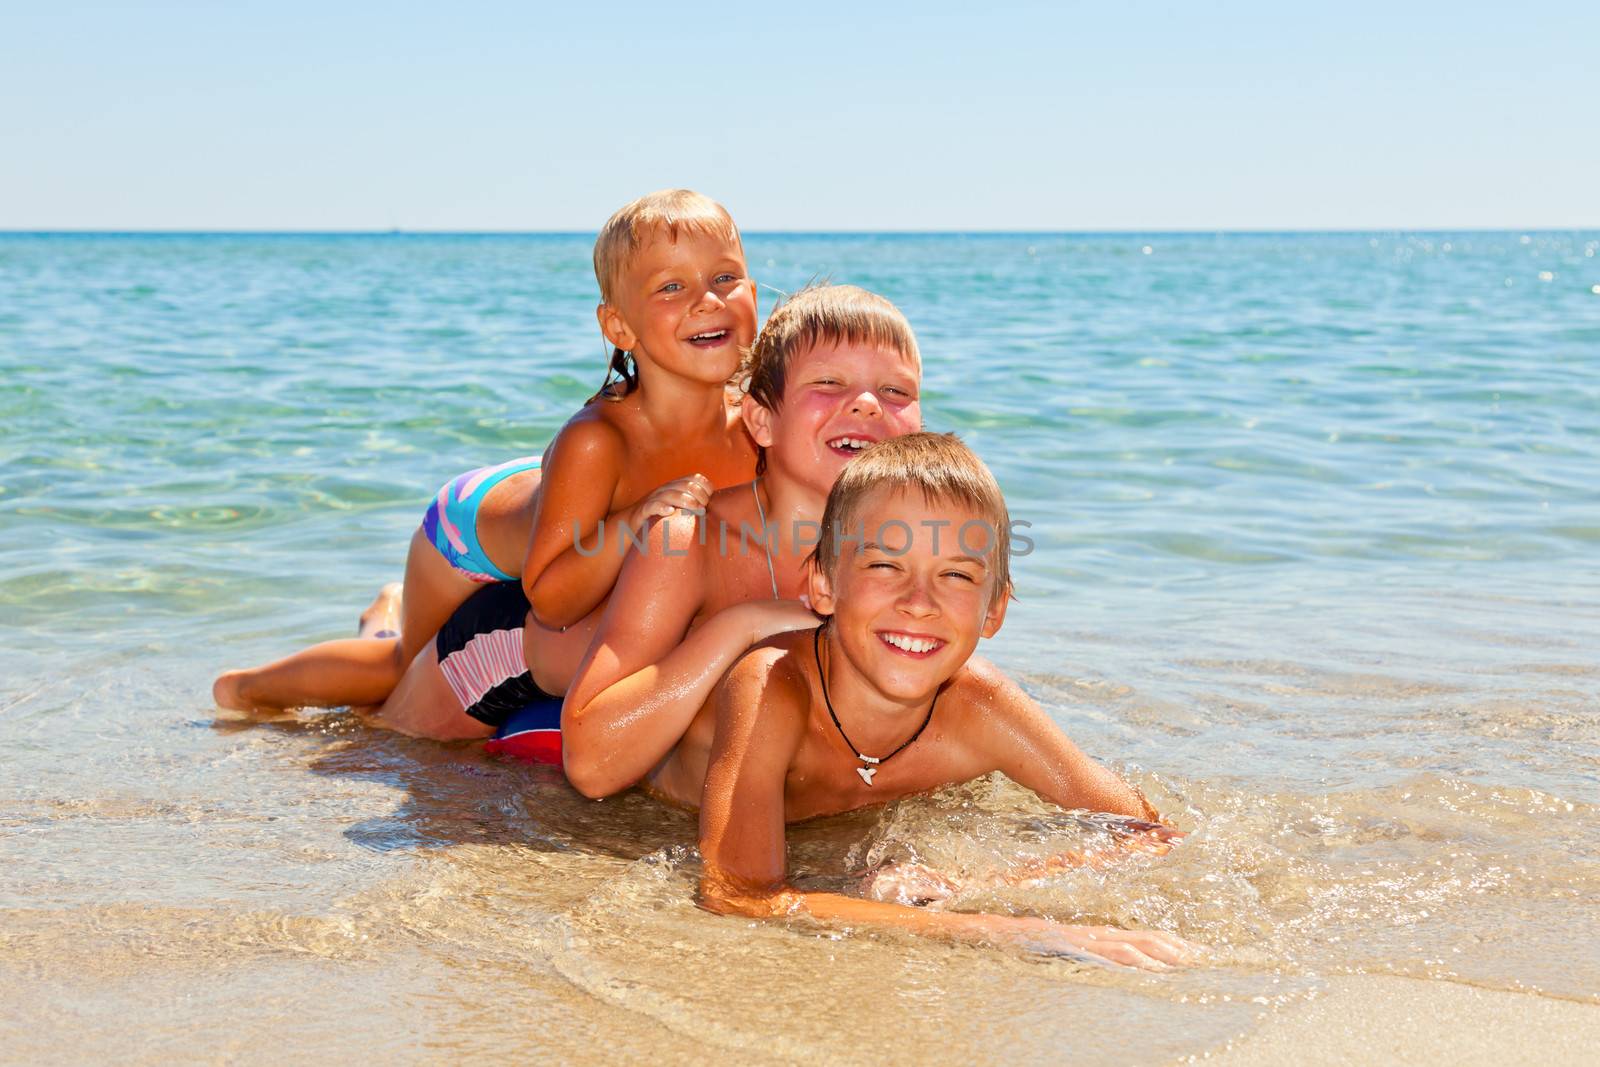 Children on a beach by naumoid